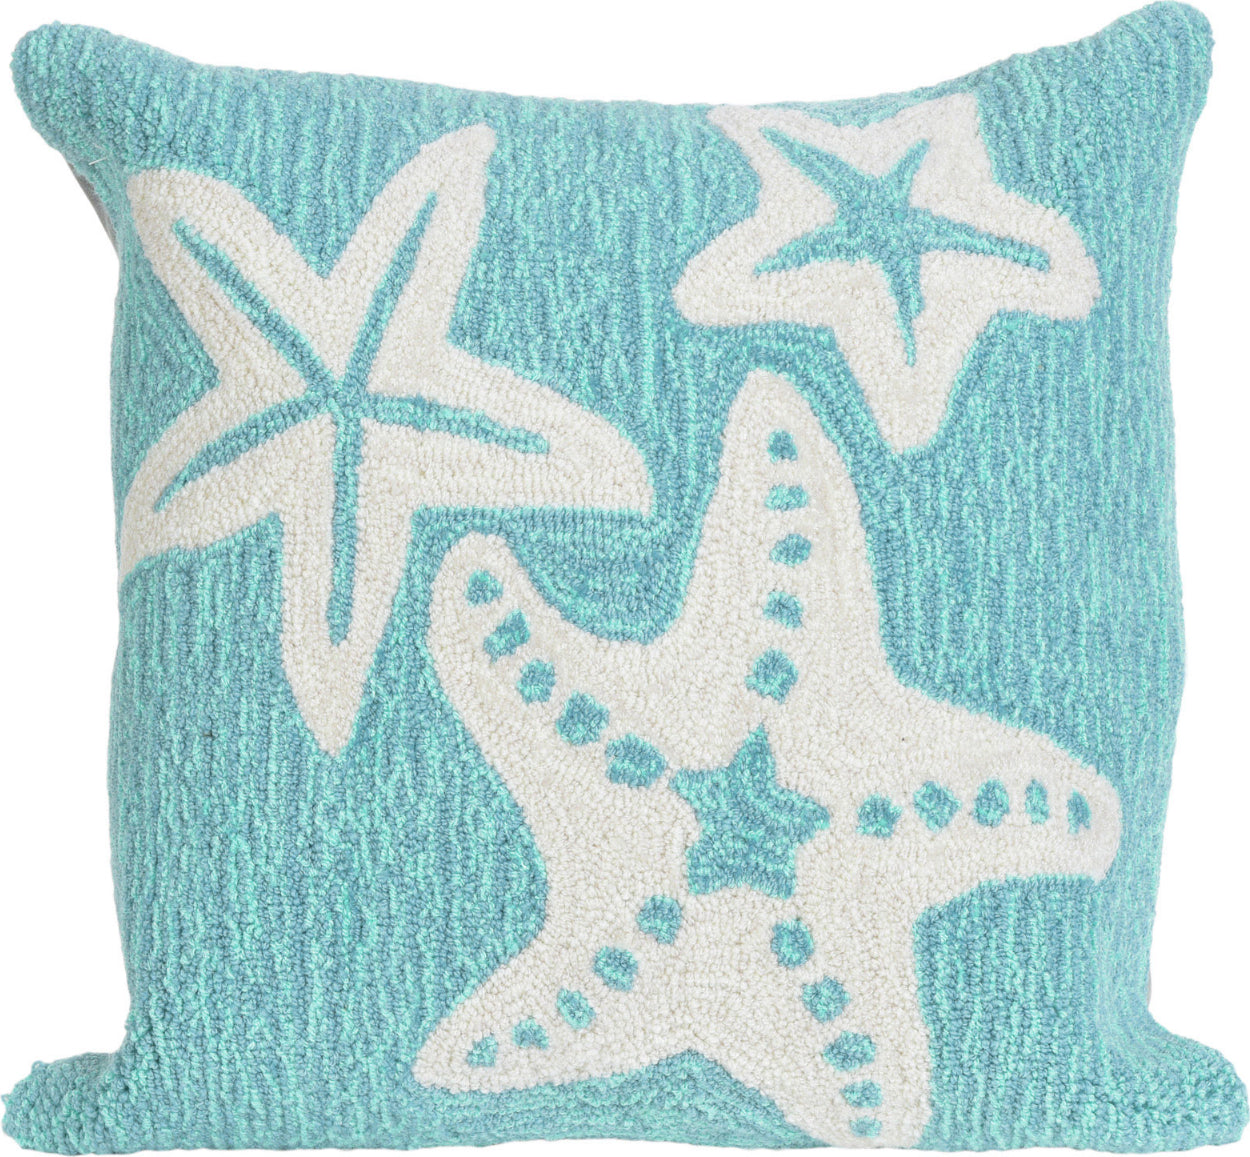 Trans Ocean Frontporch Starfish Blue by Liora Manne